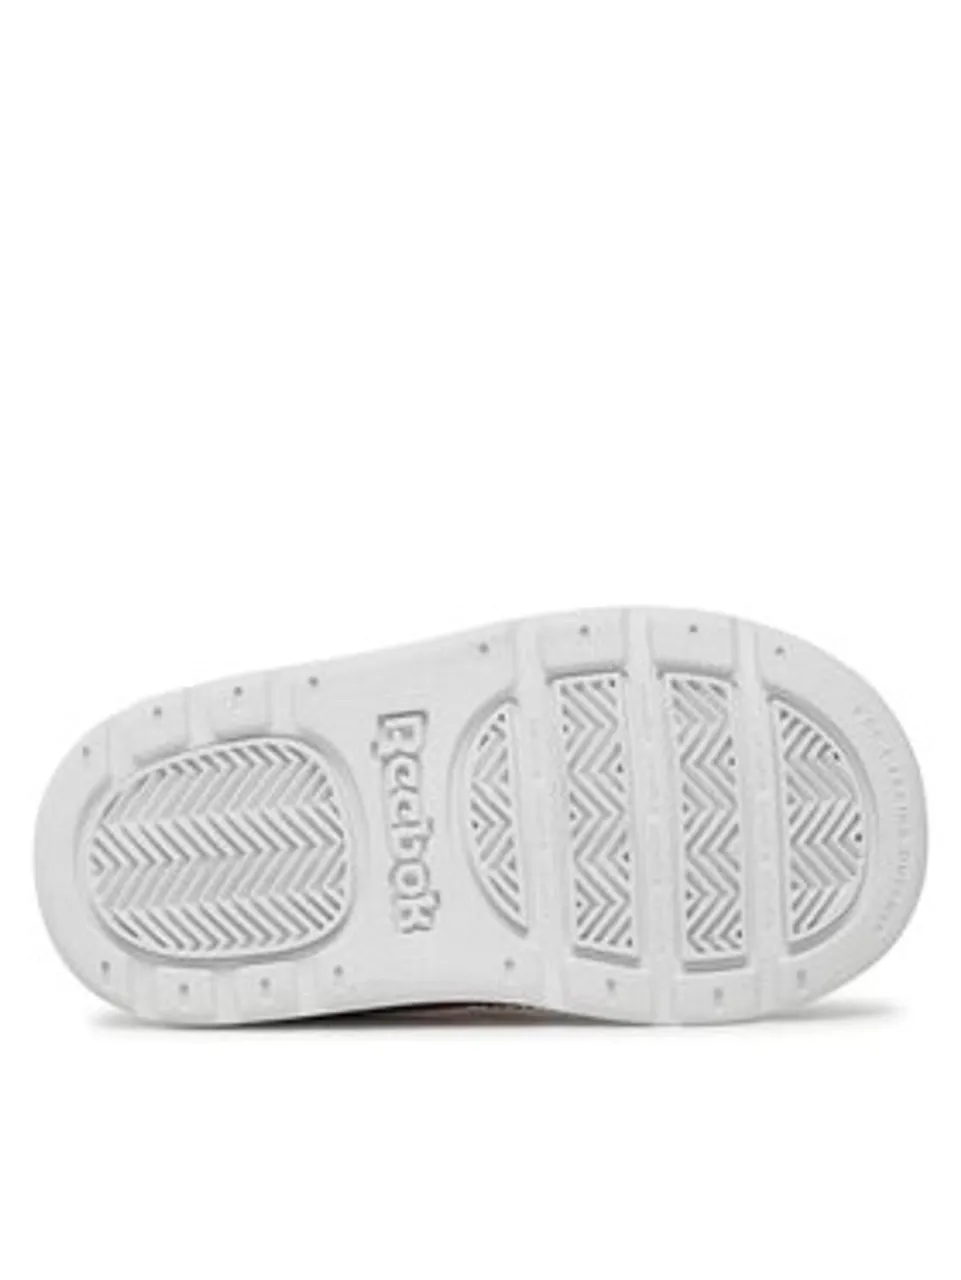 Reebok Sneakers Royal Prime 2 IE6663 Weiß